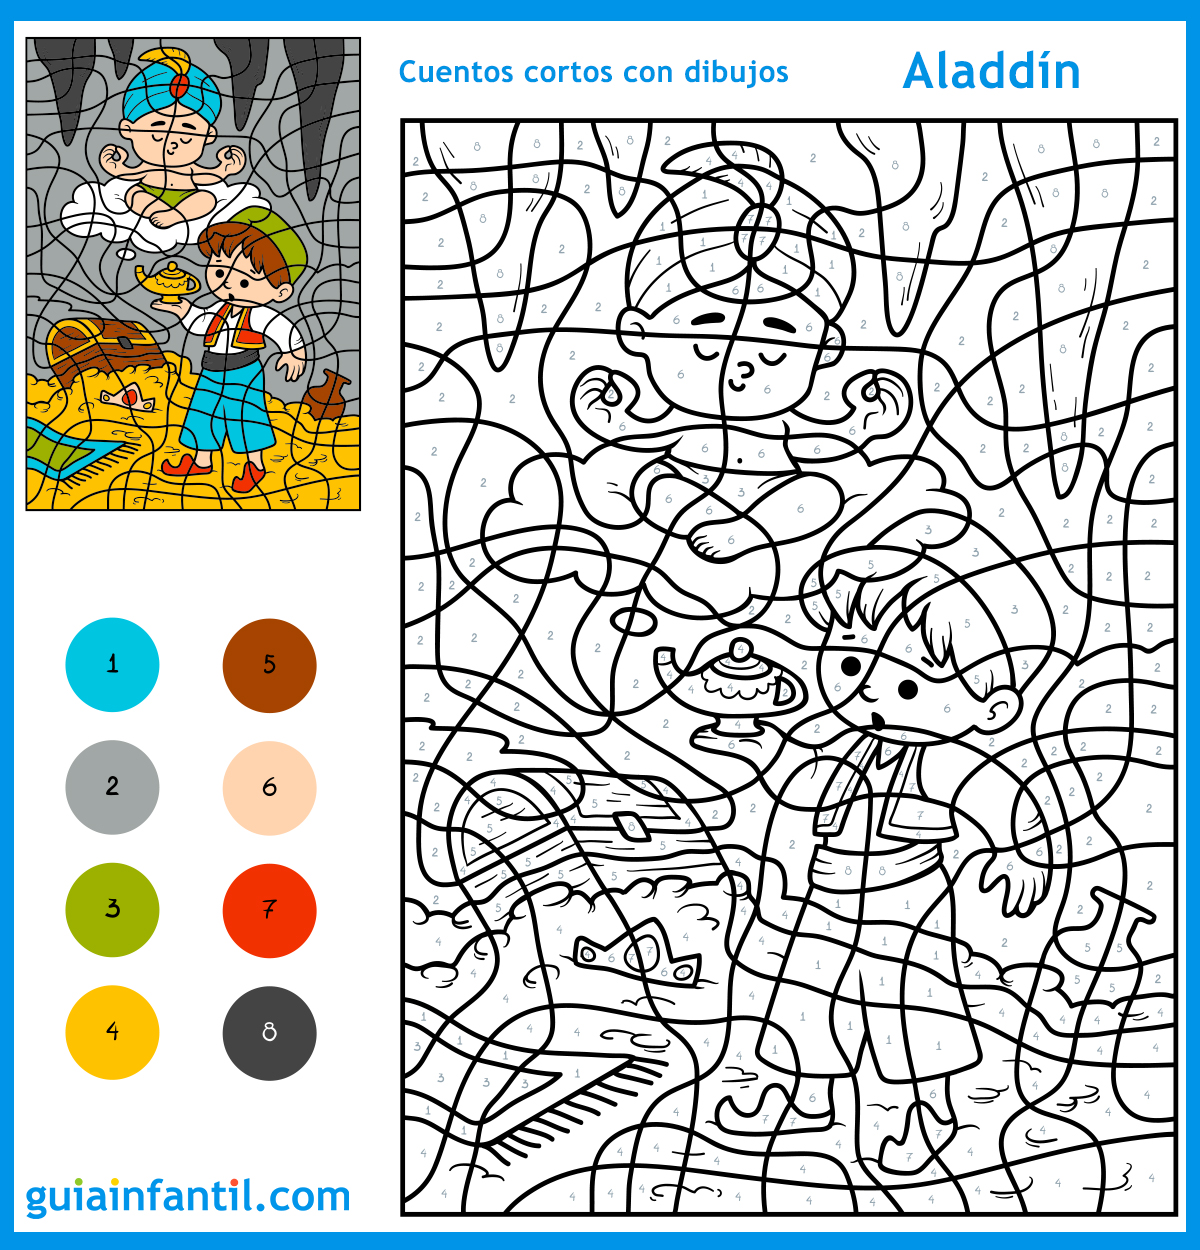 Serrado calor ponerse en cuclillas 9 cuentos cortos con dibujos e ilustraciones para colorear con niños